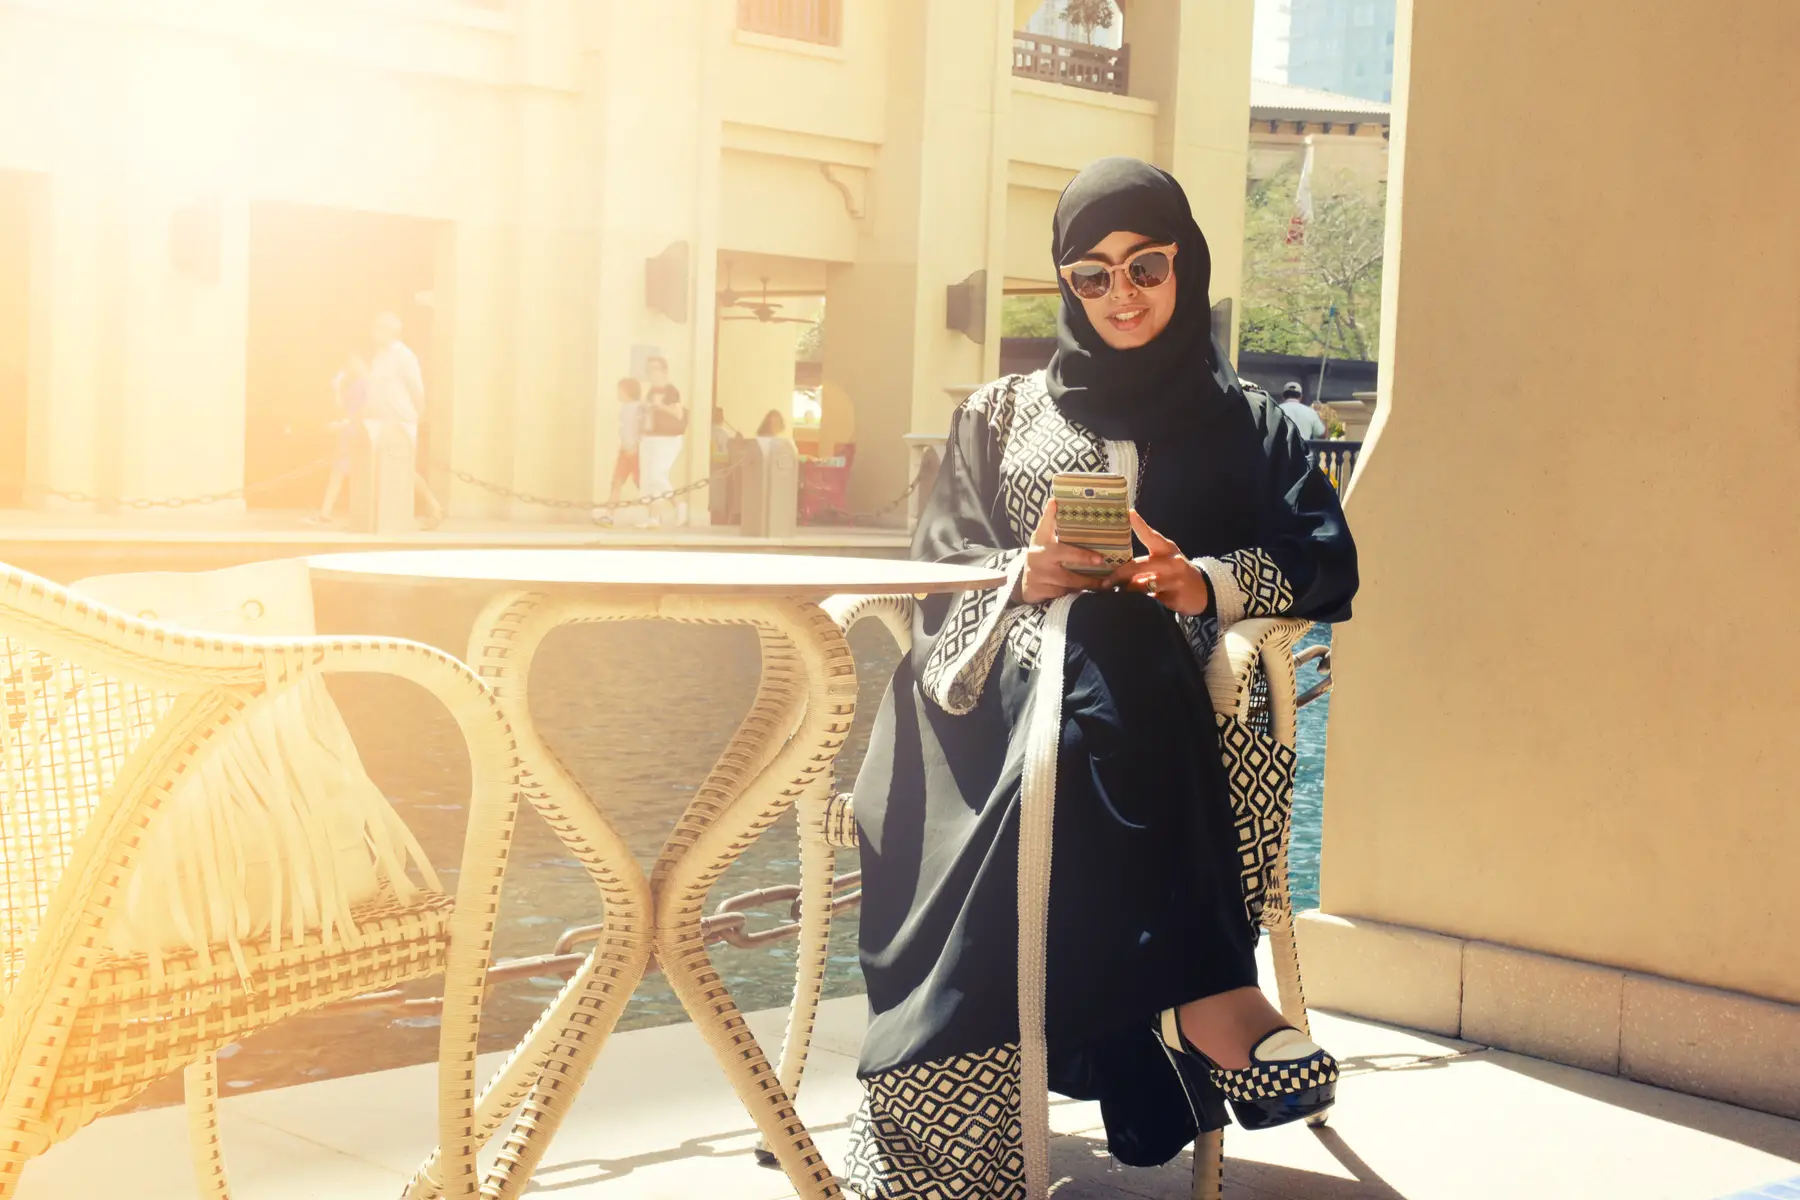 Qatari woman using her mobile phone